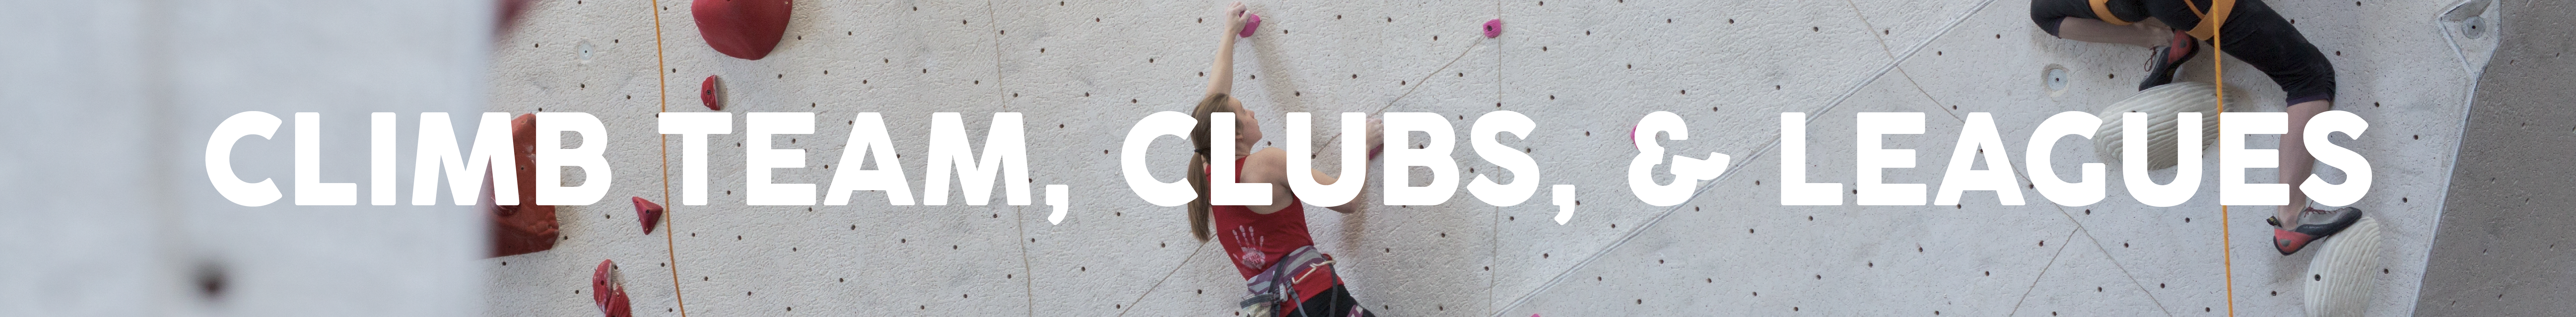 Climb team club leagues banner